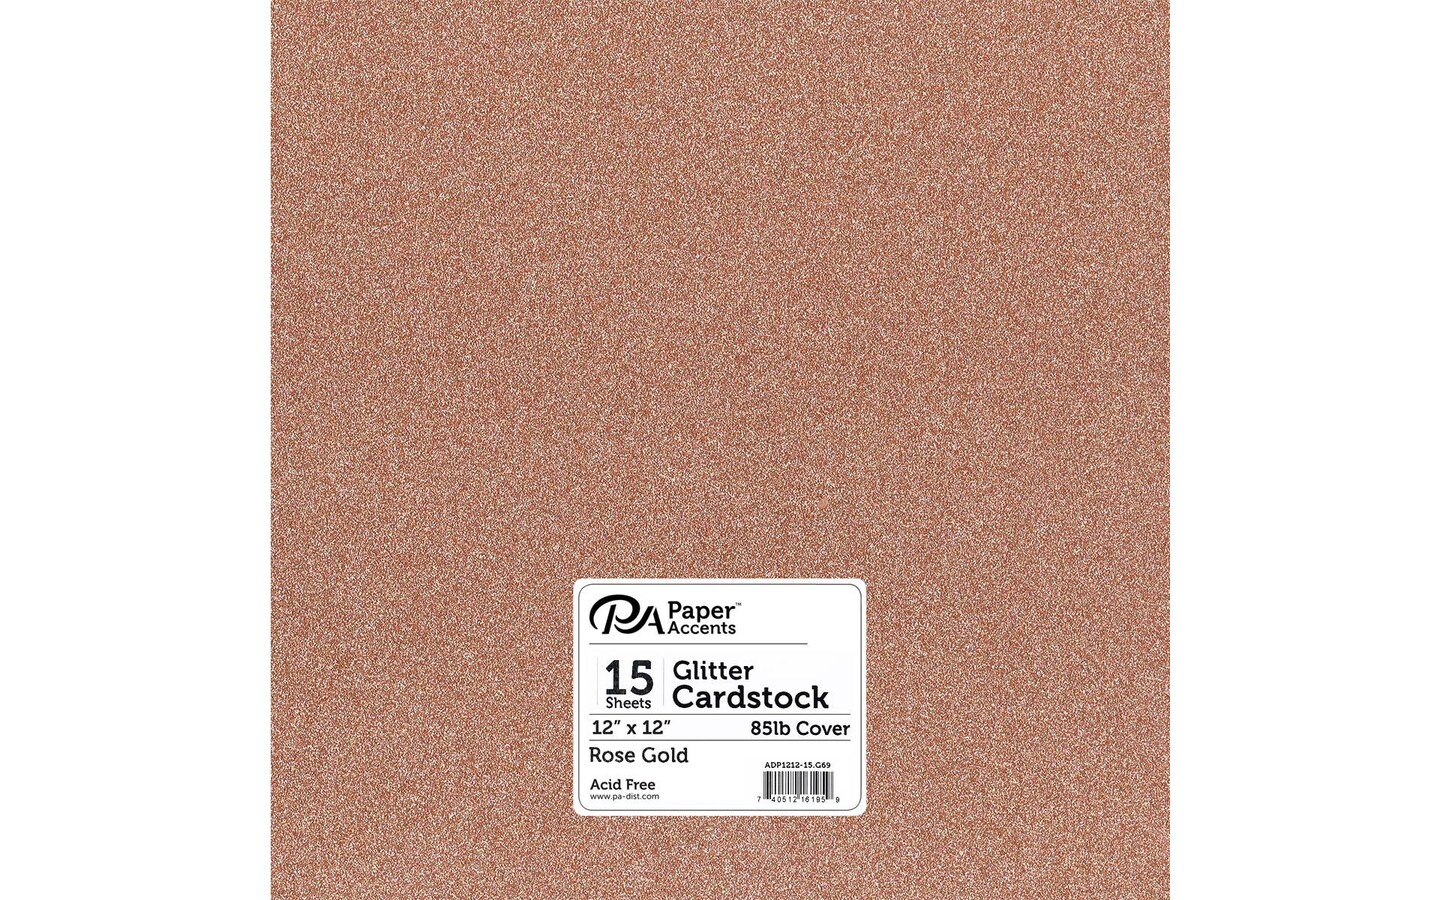 metallic cardstock - rose gold